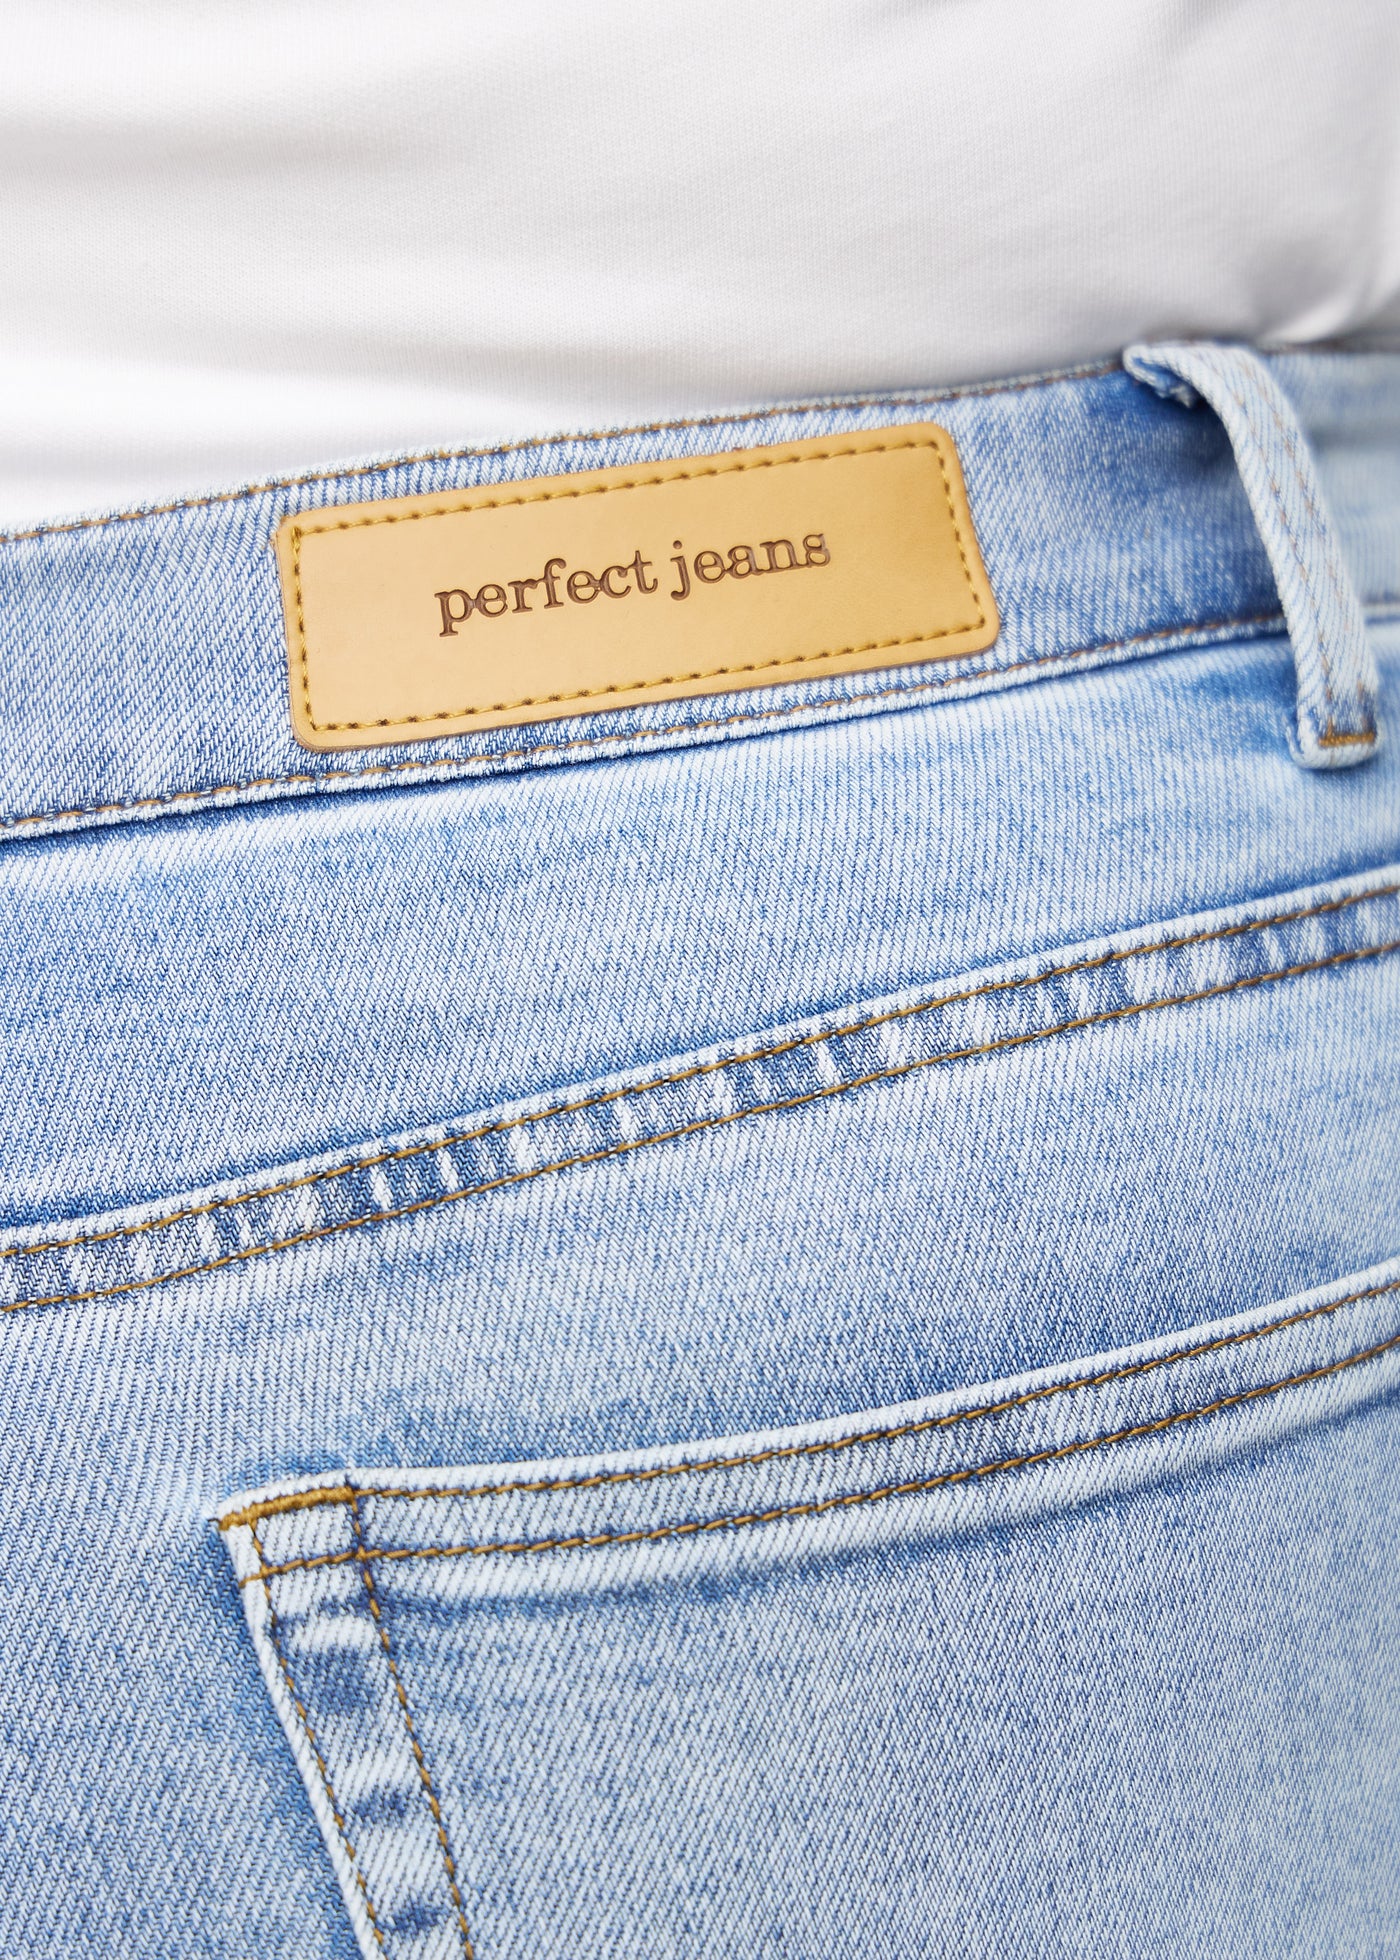 Baglommen på et par lys denim jeans, hvor man kan se logoet på en plus-size model.